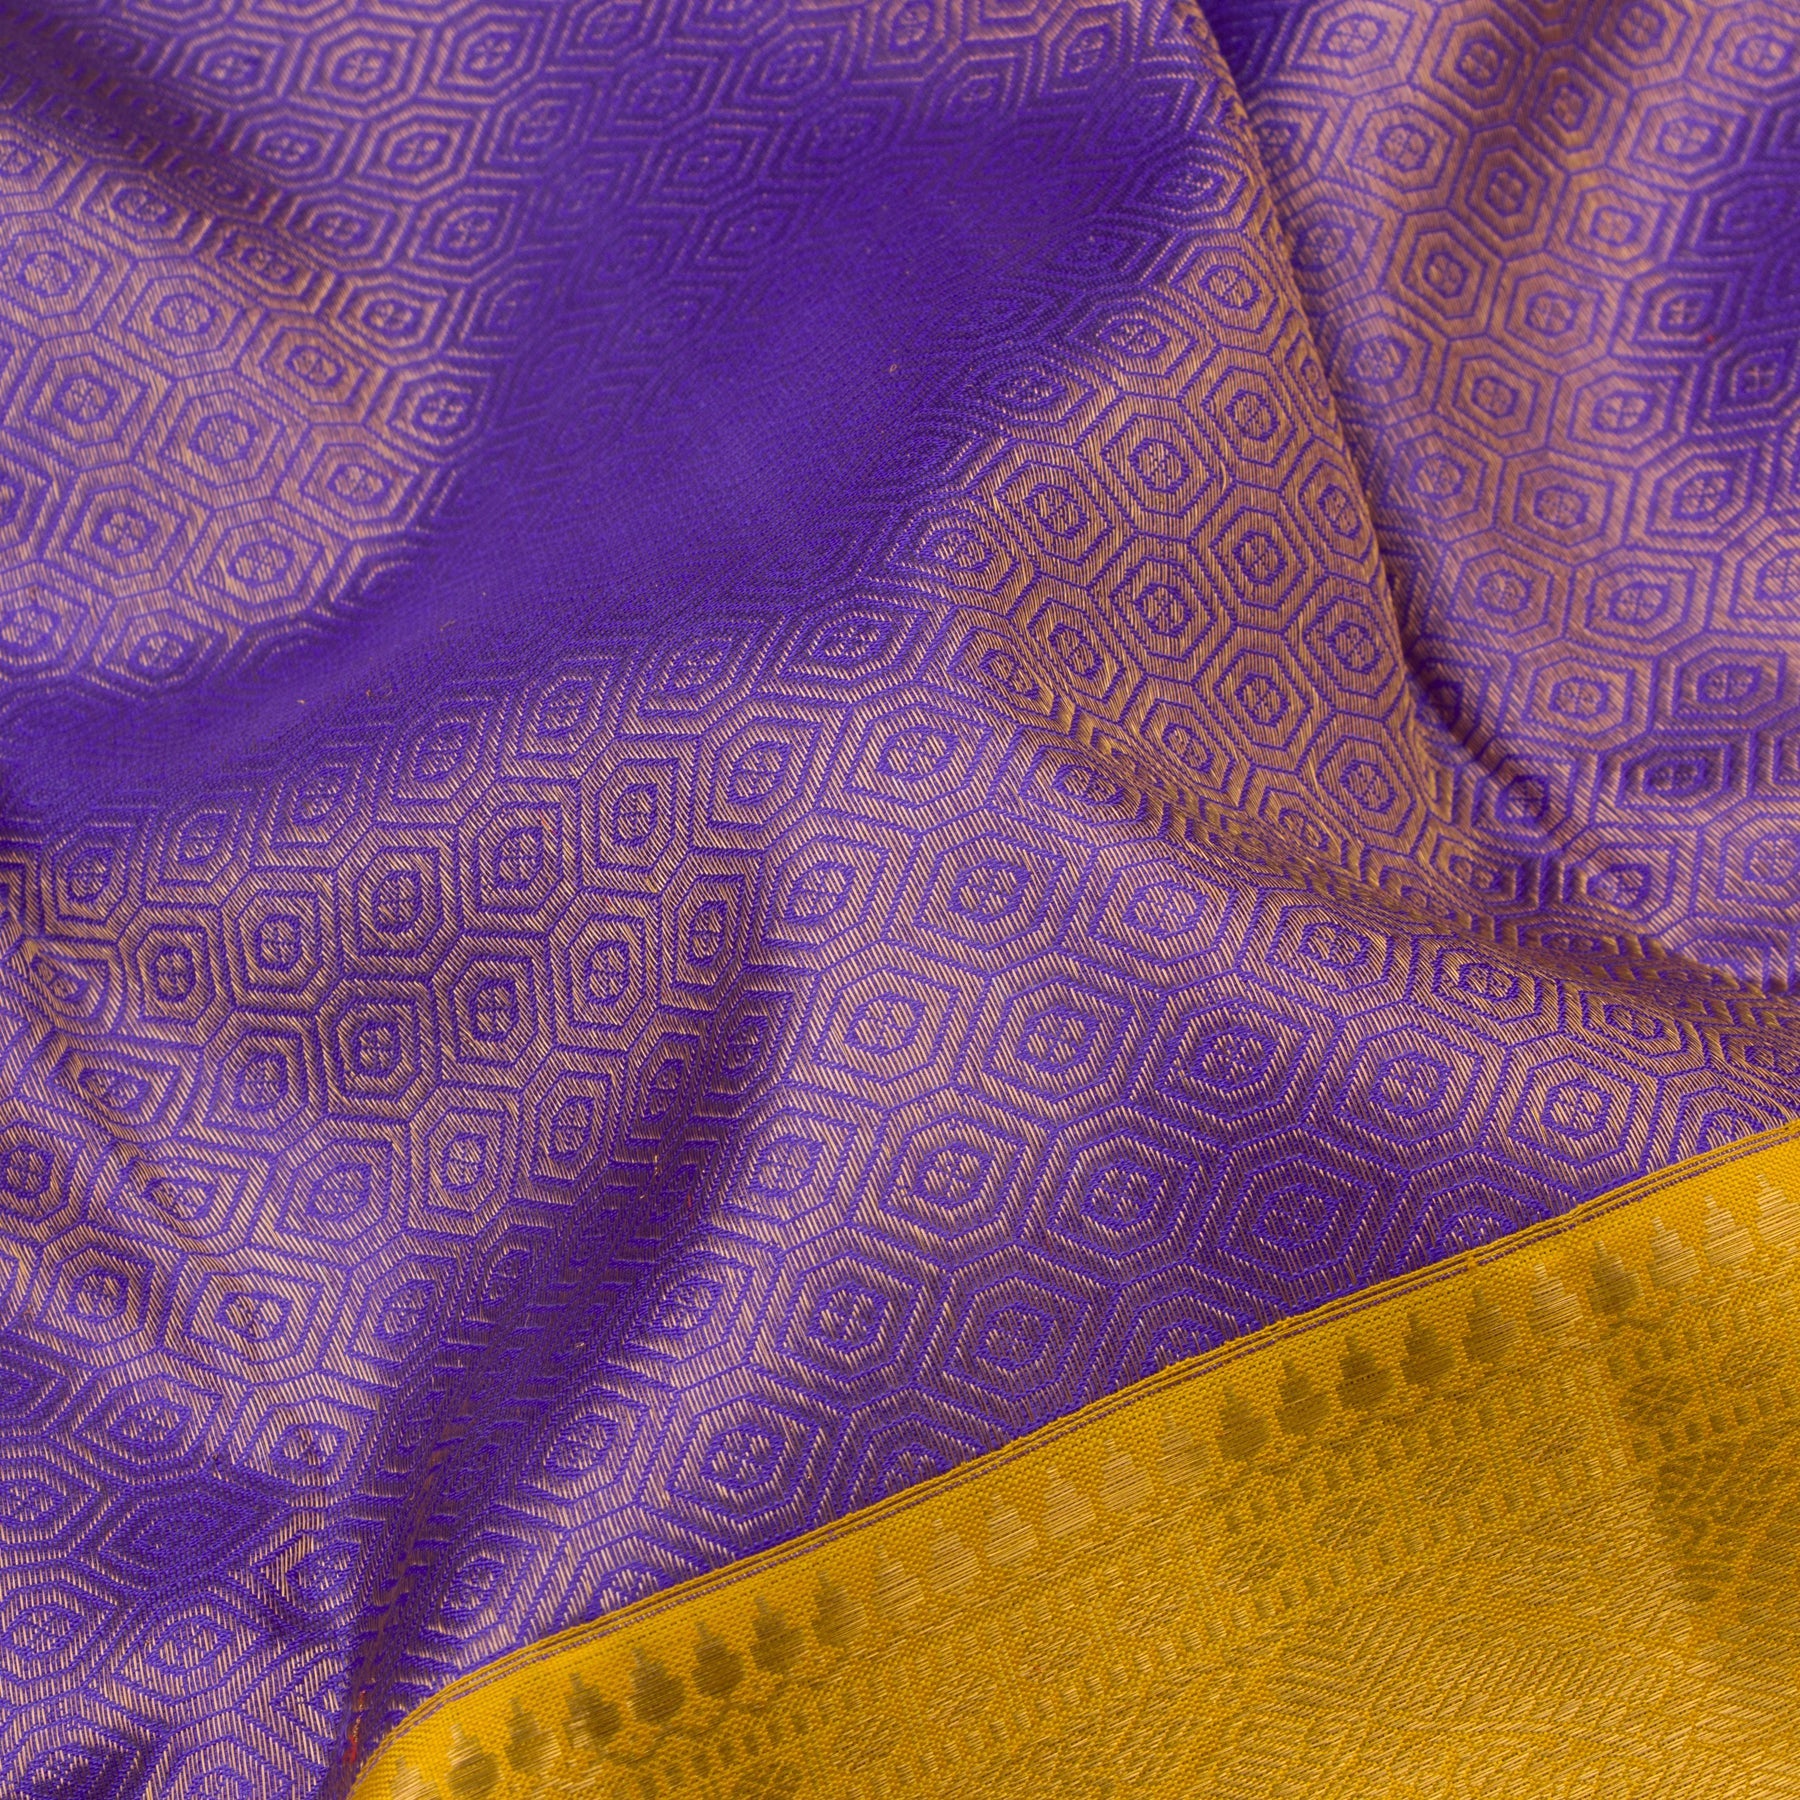 Kanakavalli Kanjivaram Silk Sari 21-110-HS001-09584 - Fabric View